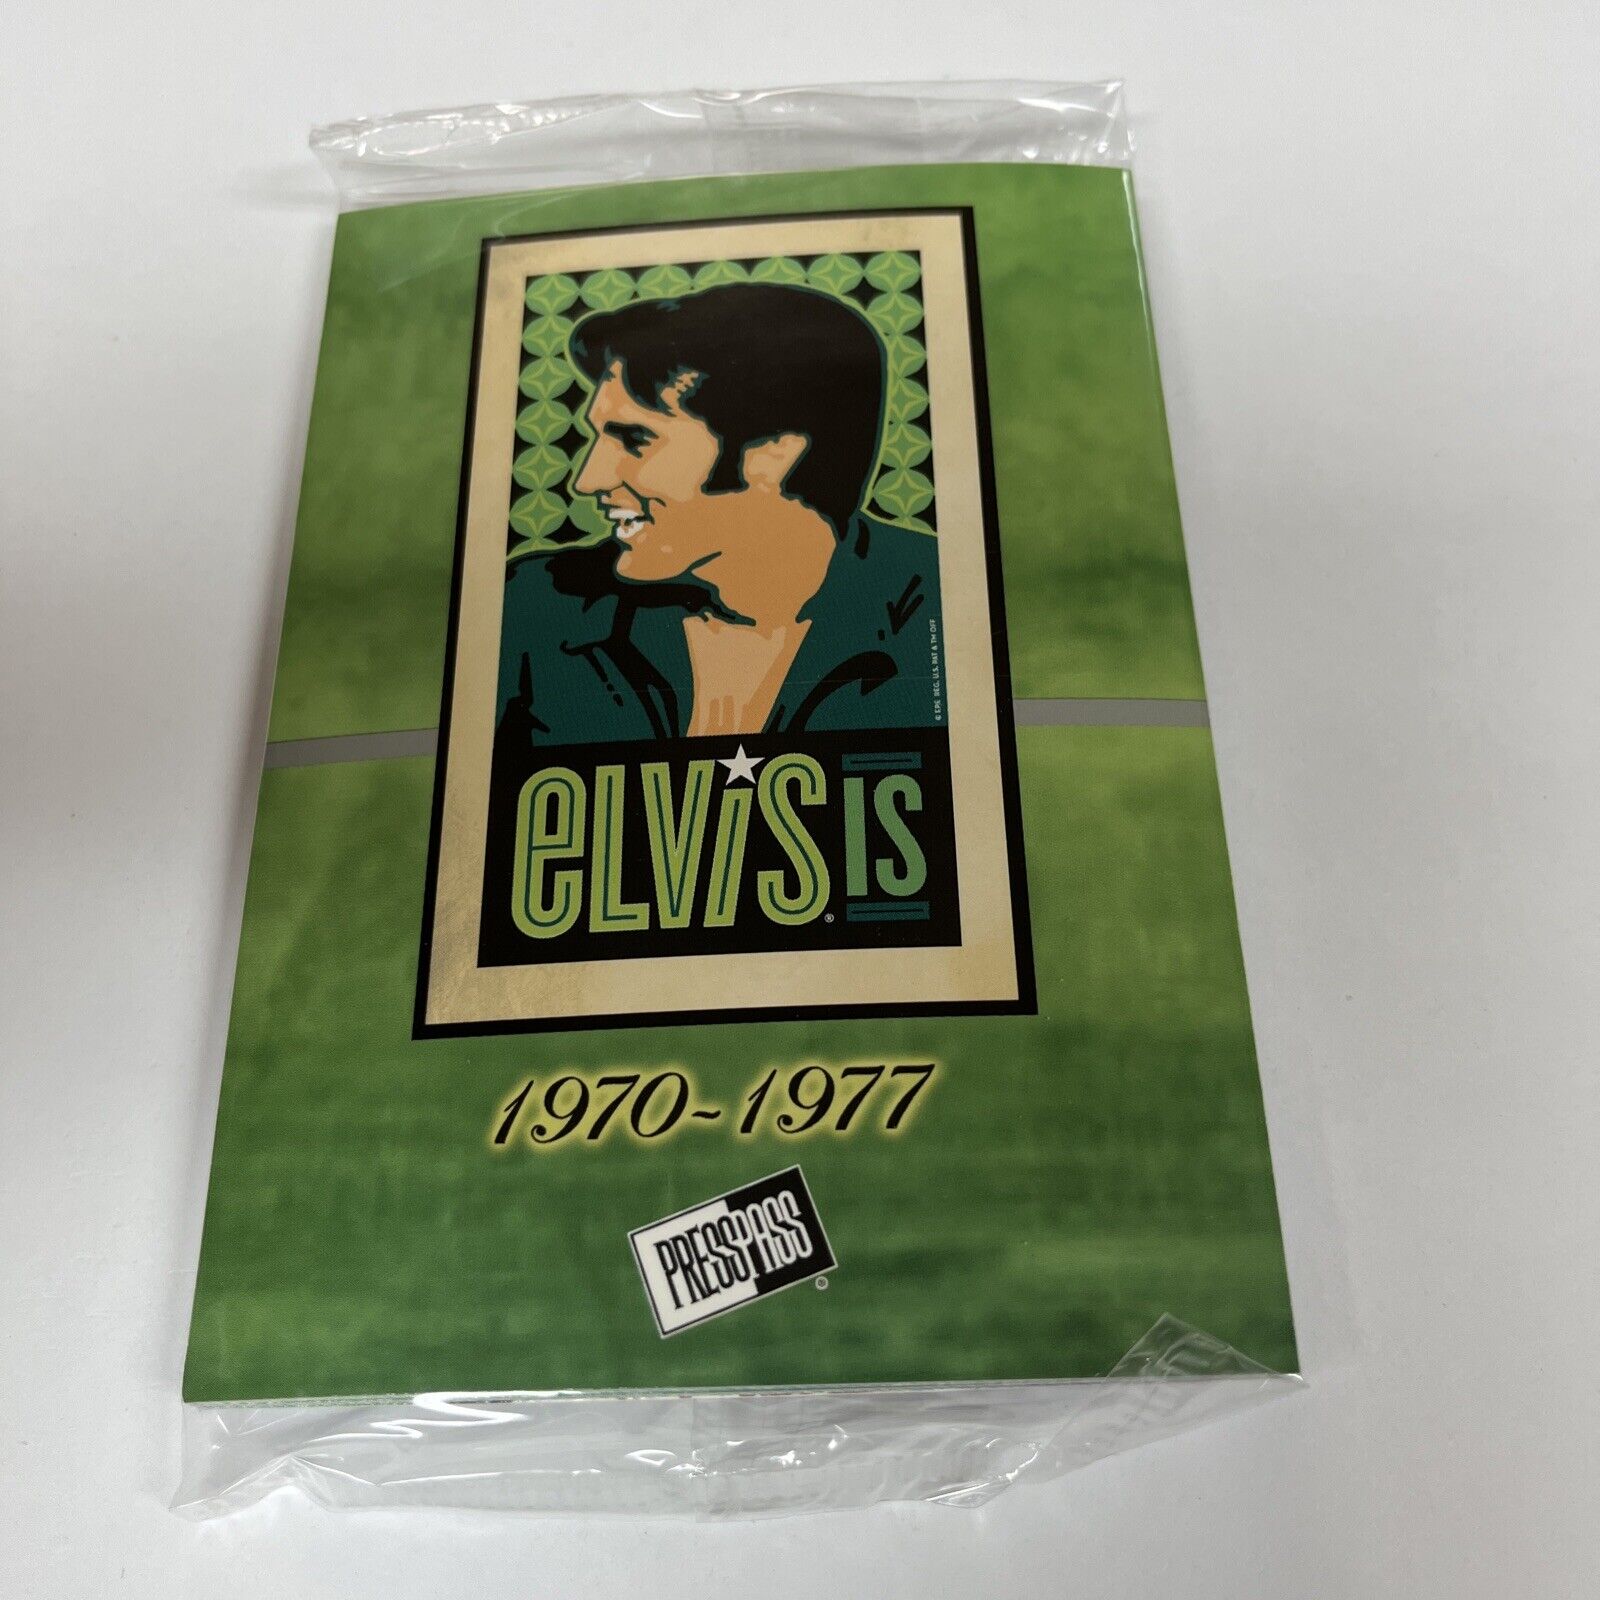 2007 Press Pass Elvis Is Timeline Sealed Jumbo (1970-1977)